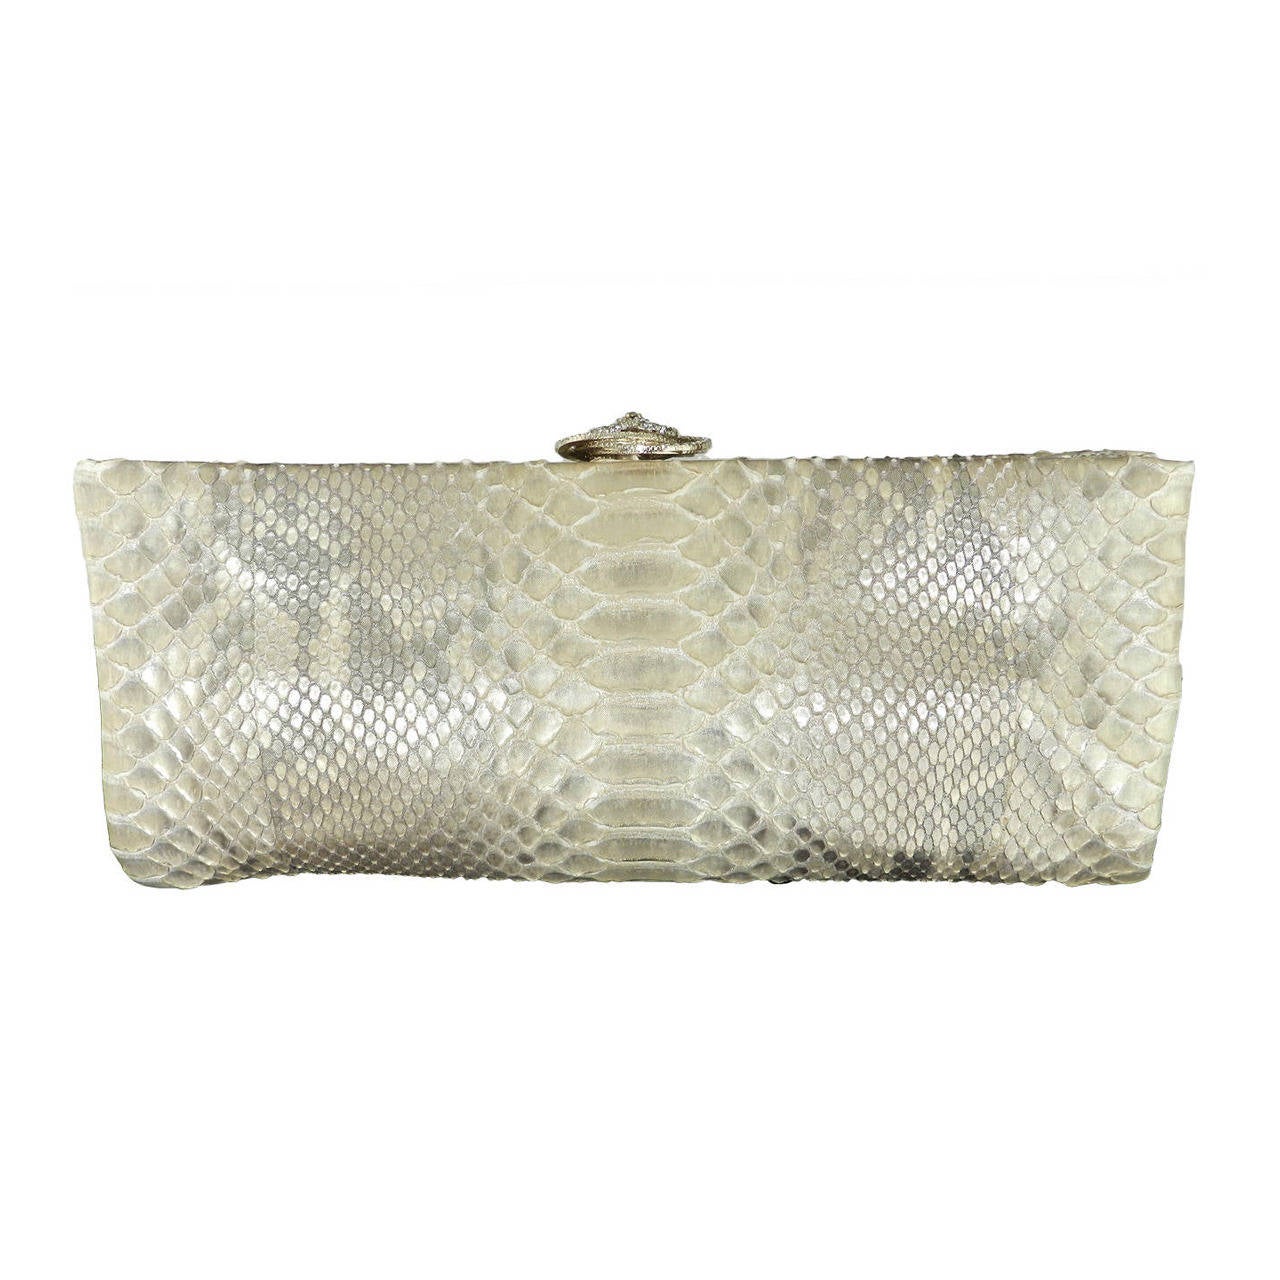 Chanel 12C Gold Python and Rhinestone Clutch Bag